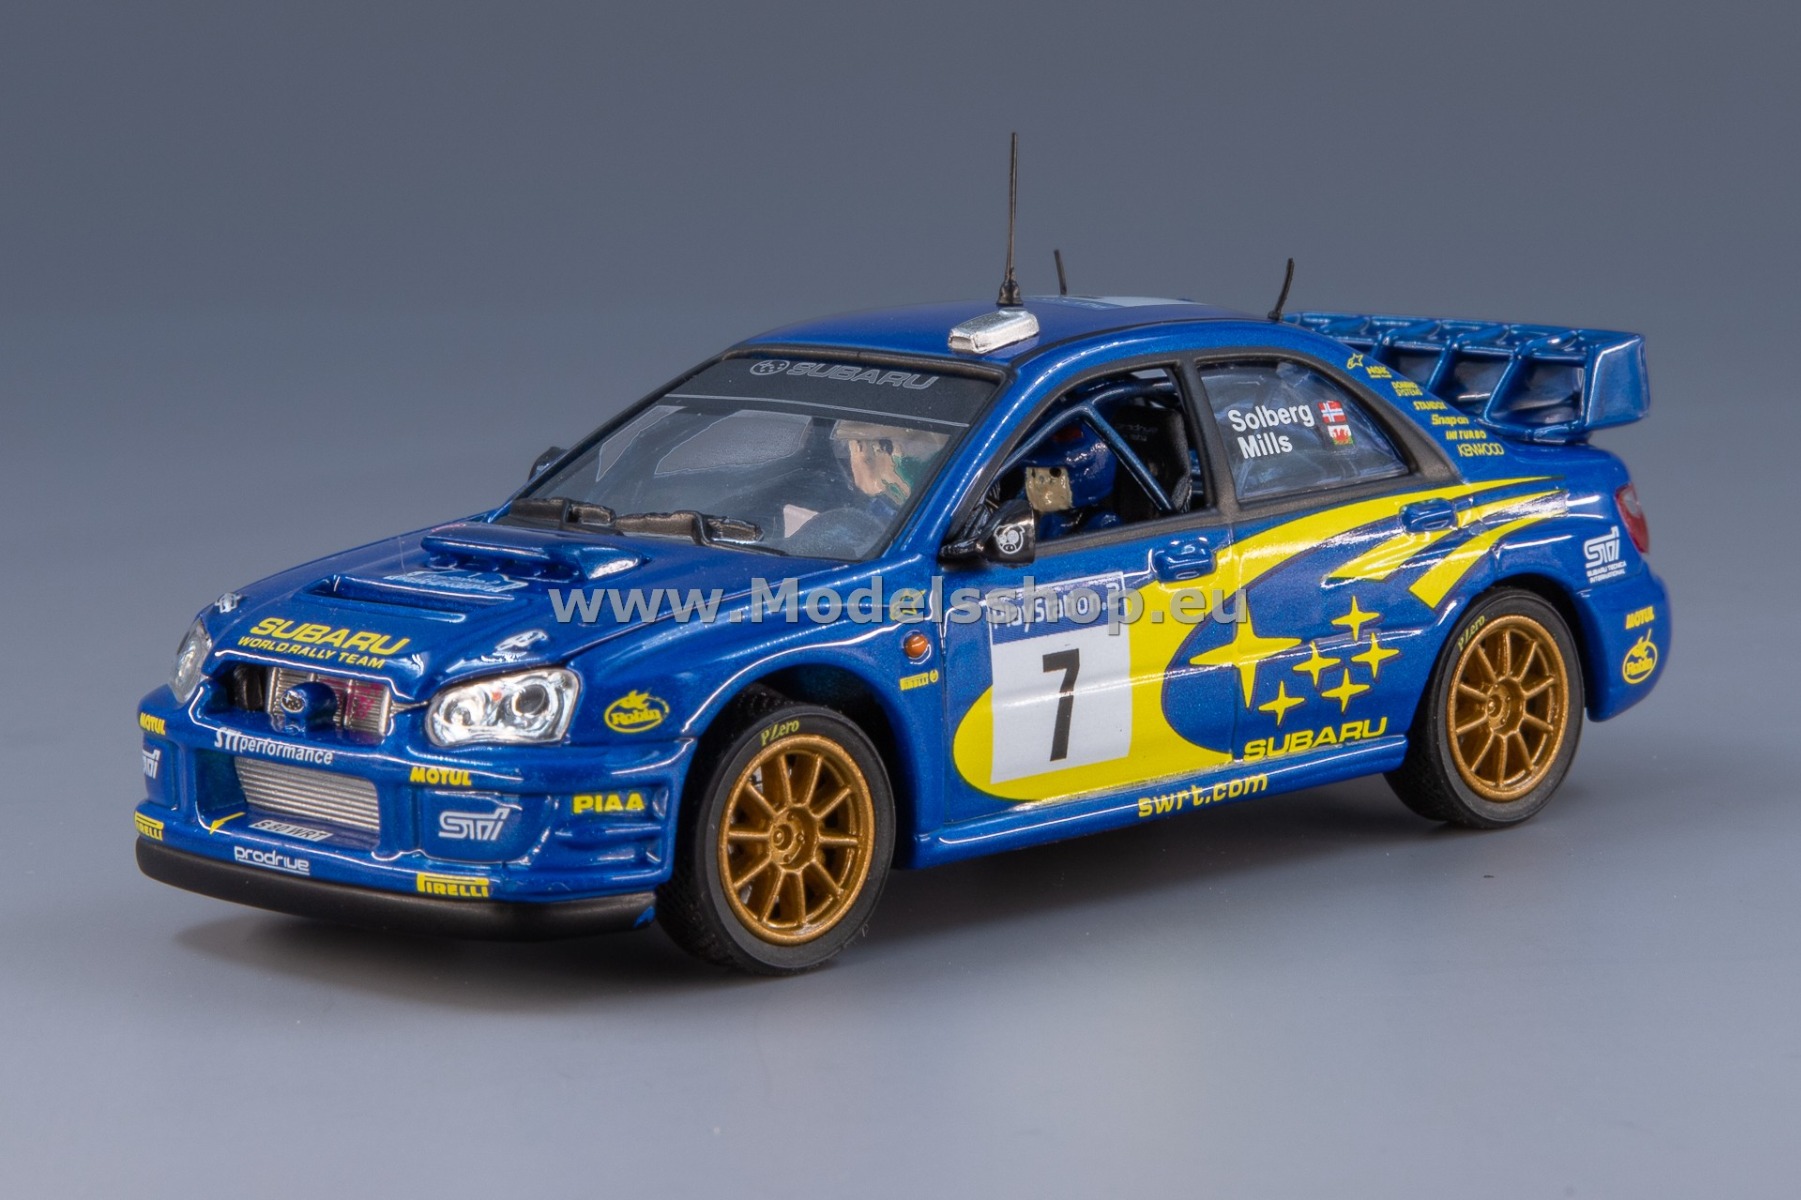 Subaru Impreza WRC No. 7, Tour de Corse 2003, P.Solberg - P. Mills